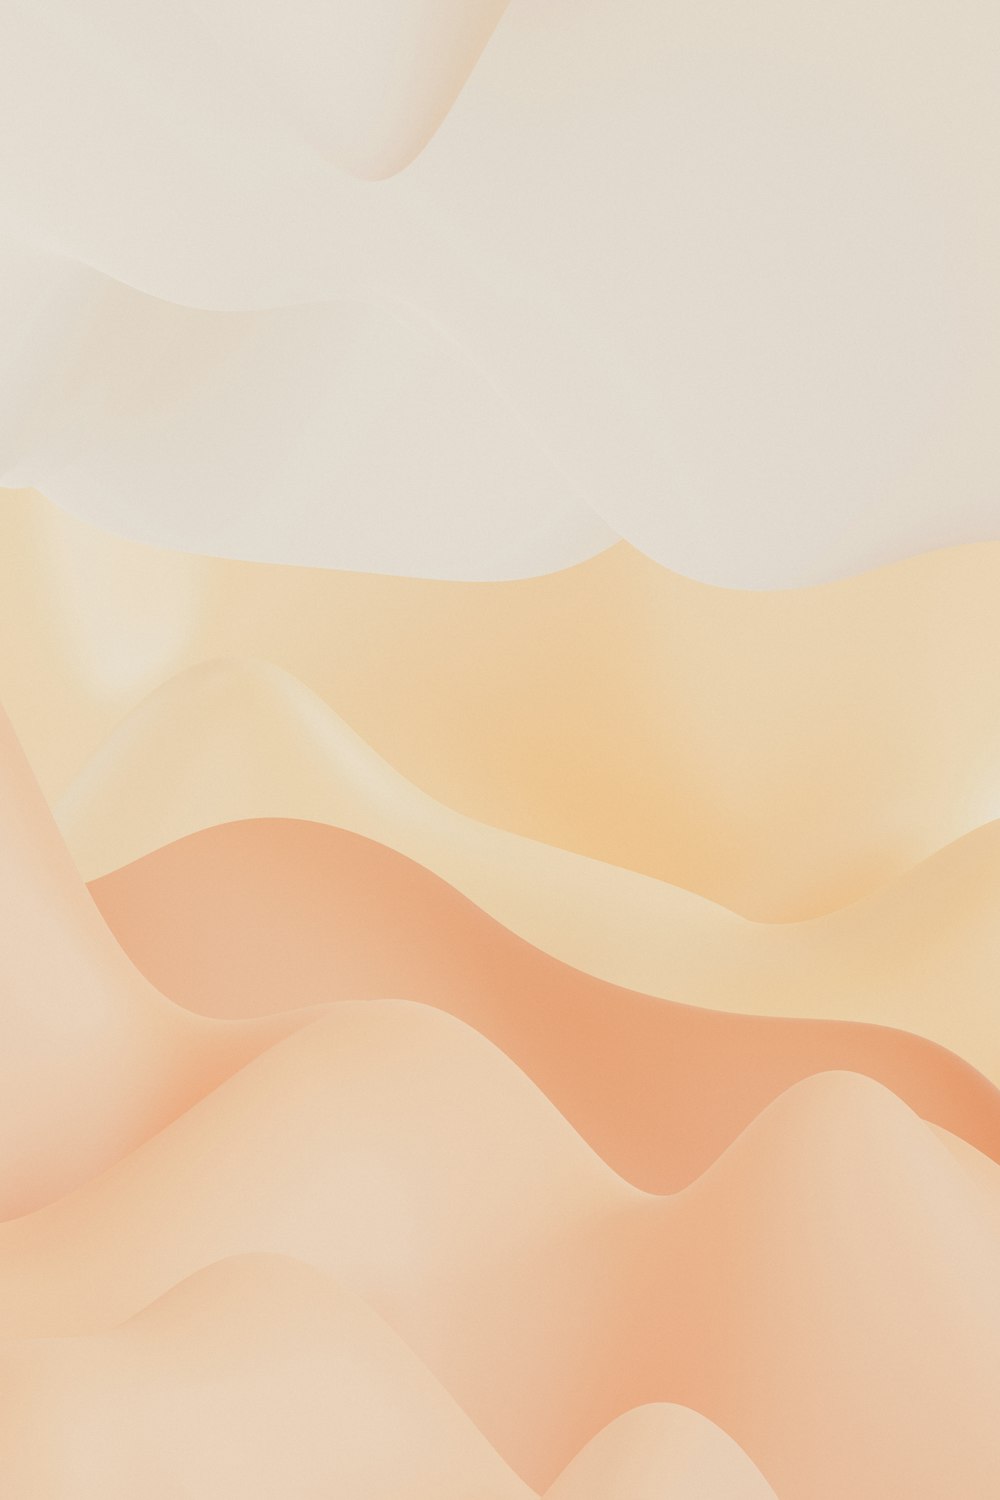 Une scène désertique avec un fond blanc et orange